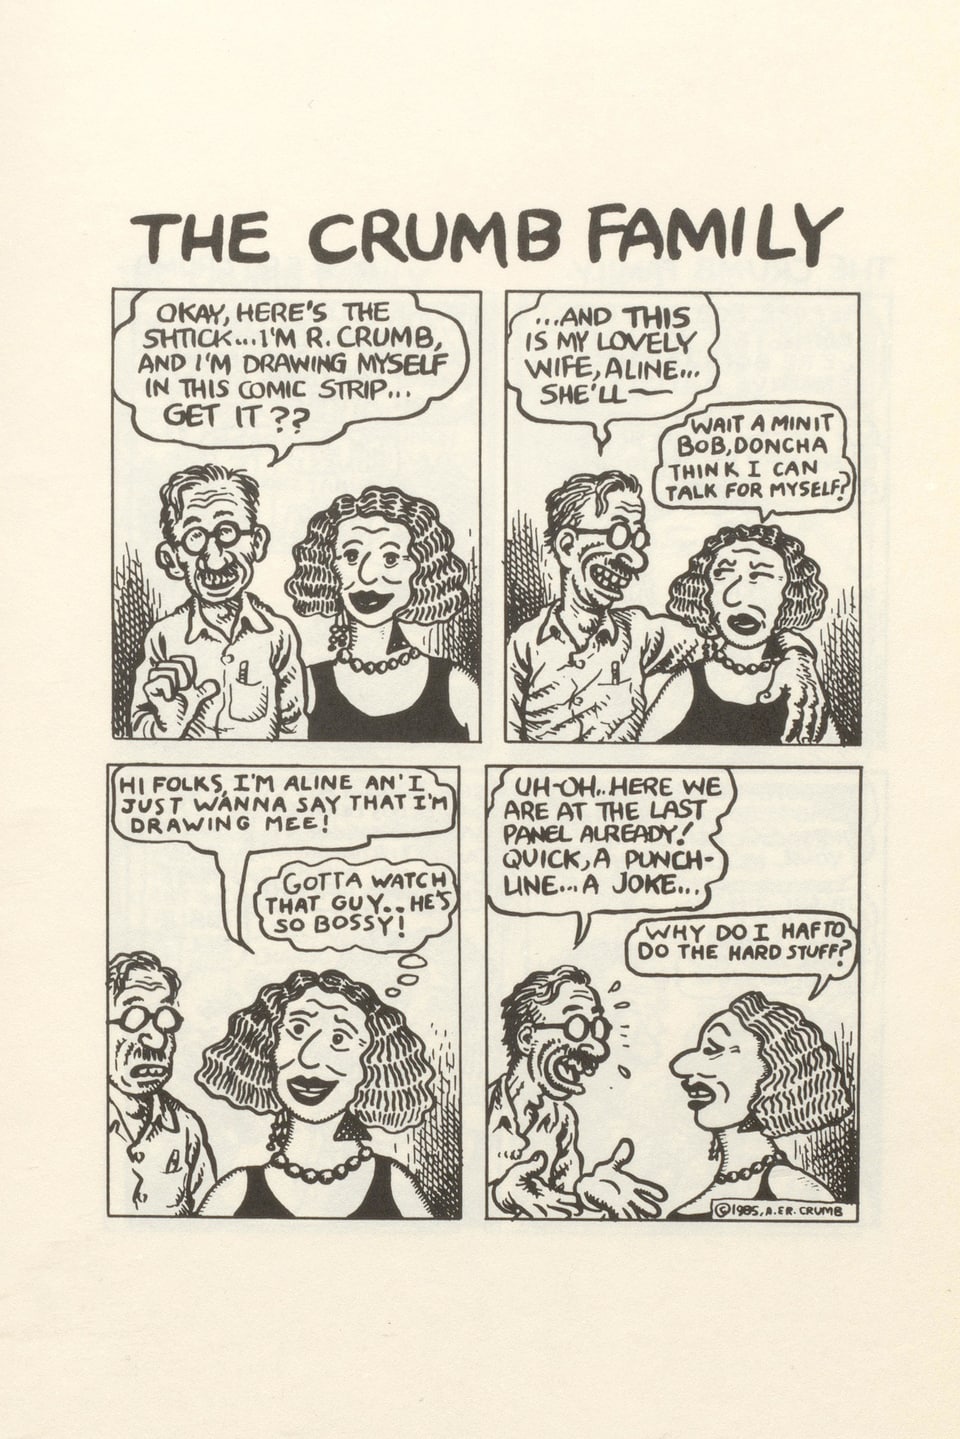 Comicseite in schwarz-weiss mit einem typischen Familiendialog